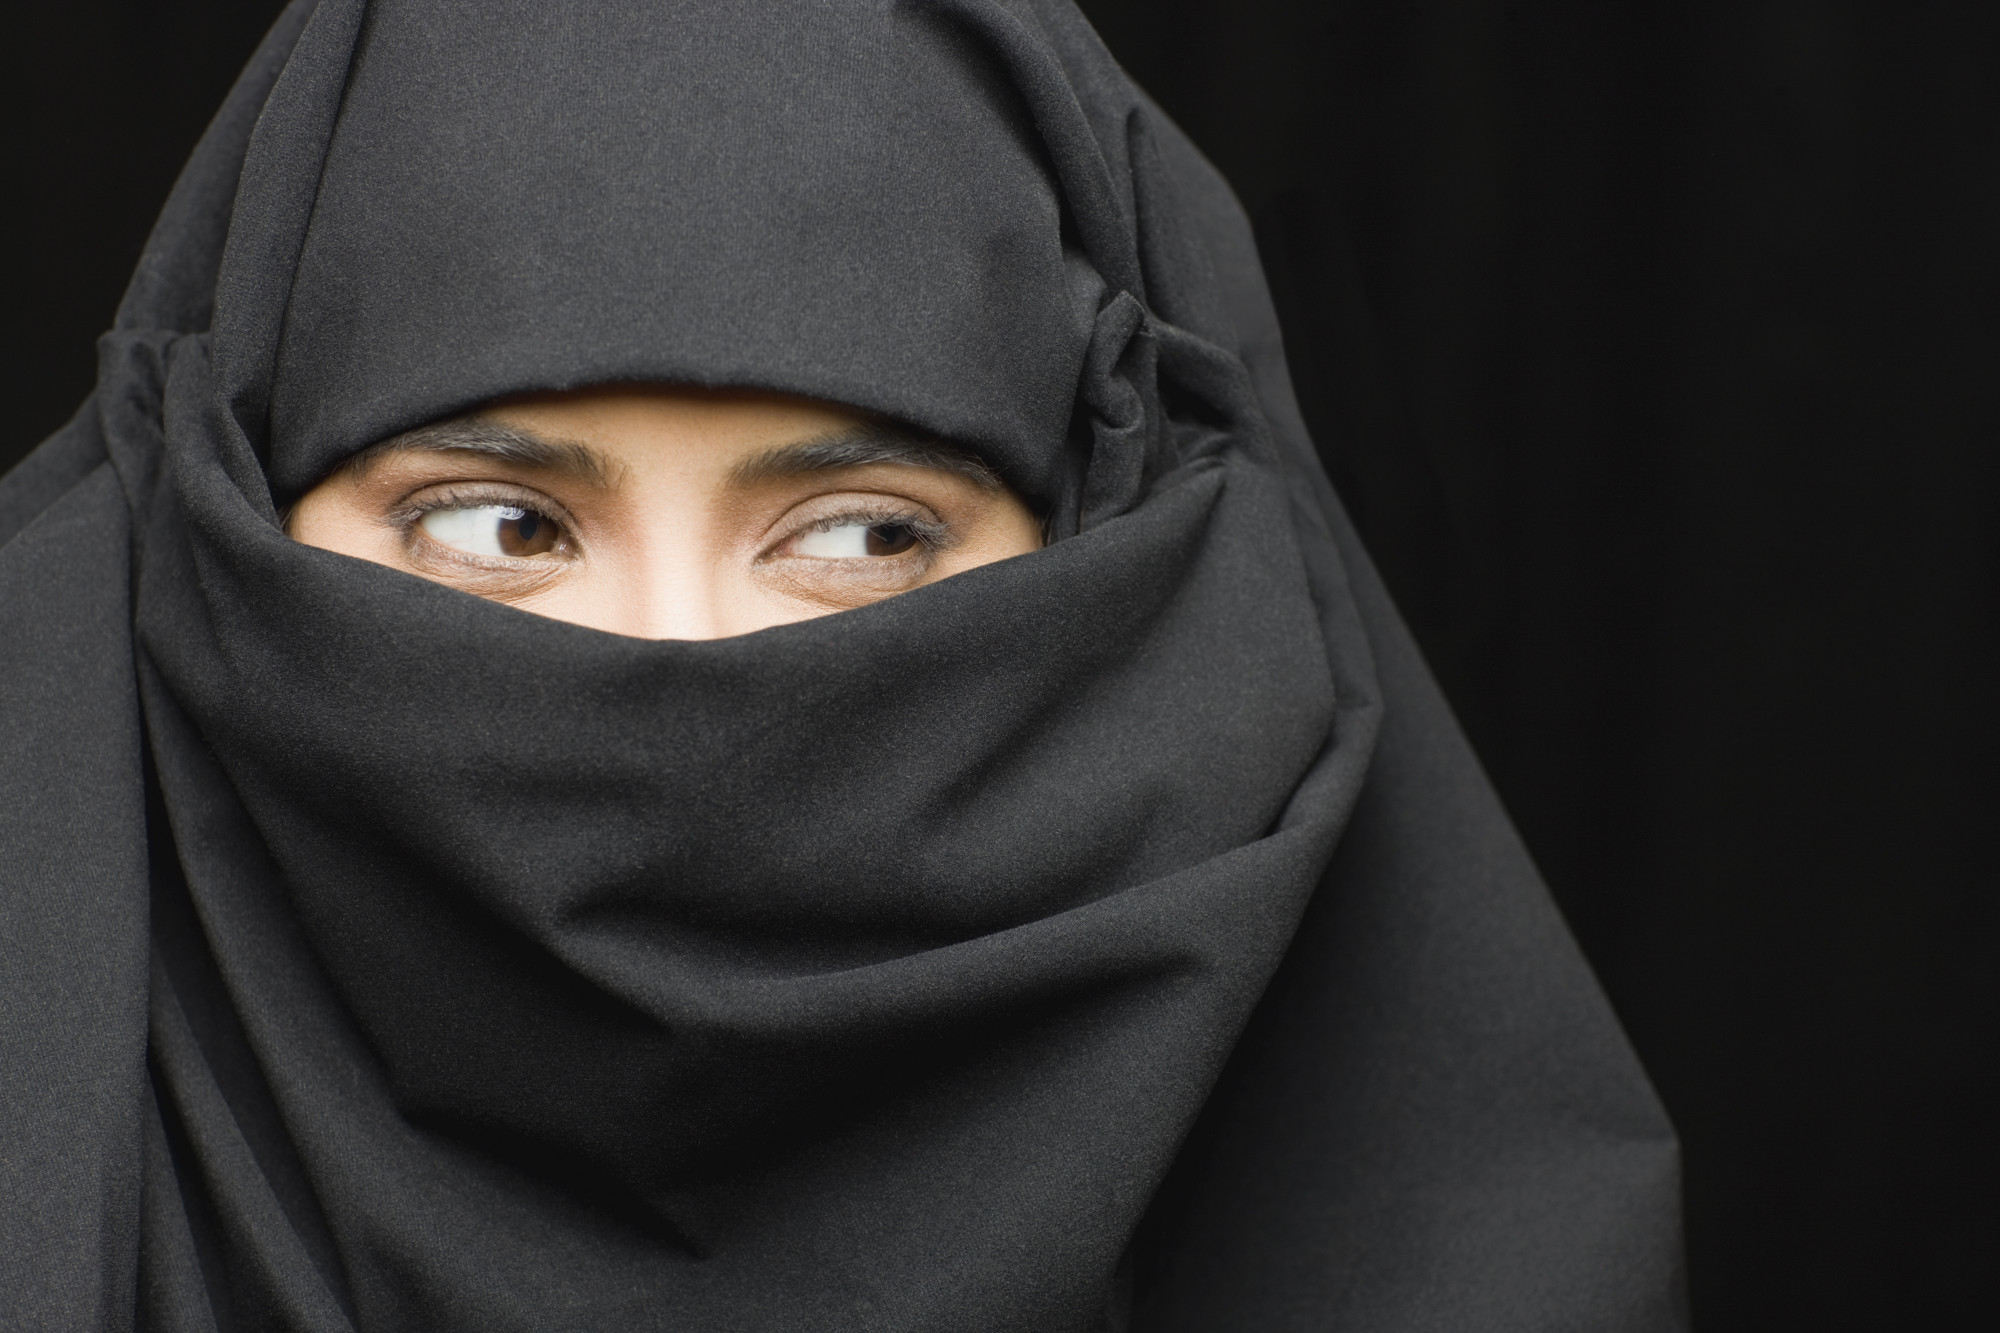 Austria interzice purtarea burka în spaţiile publice